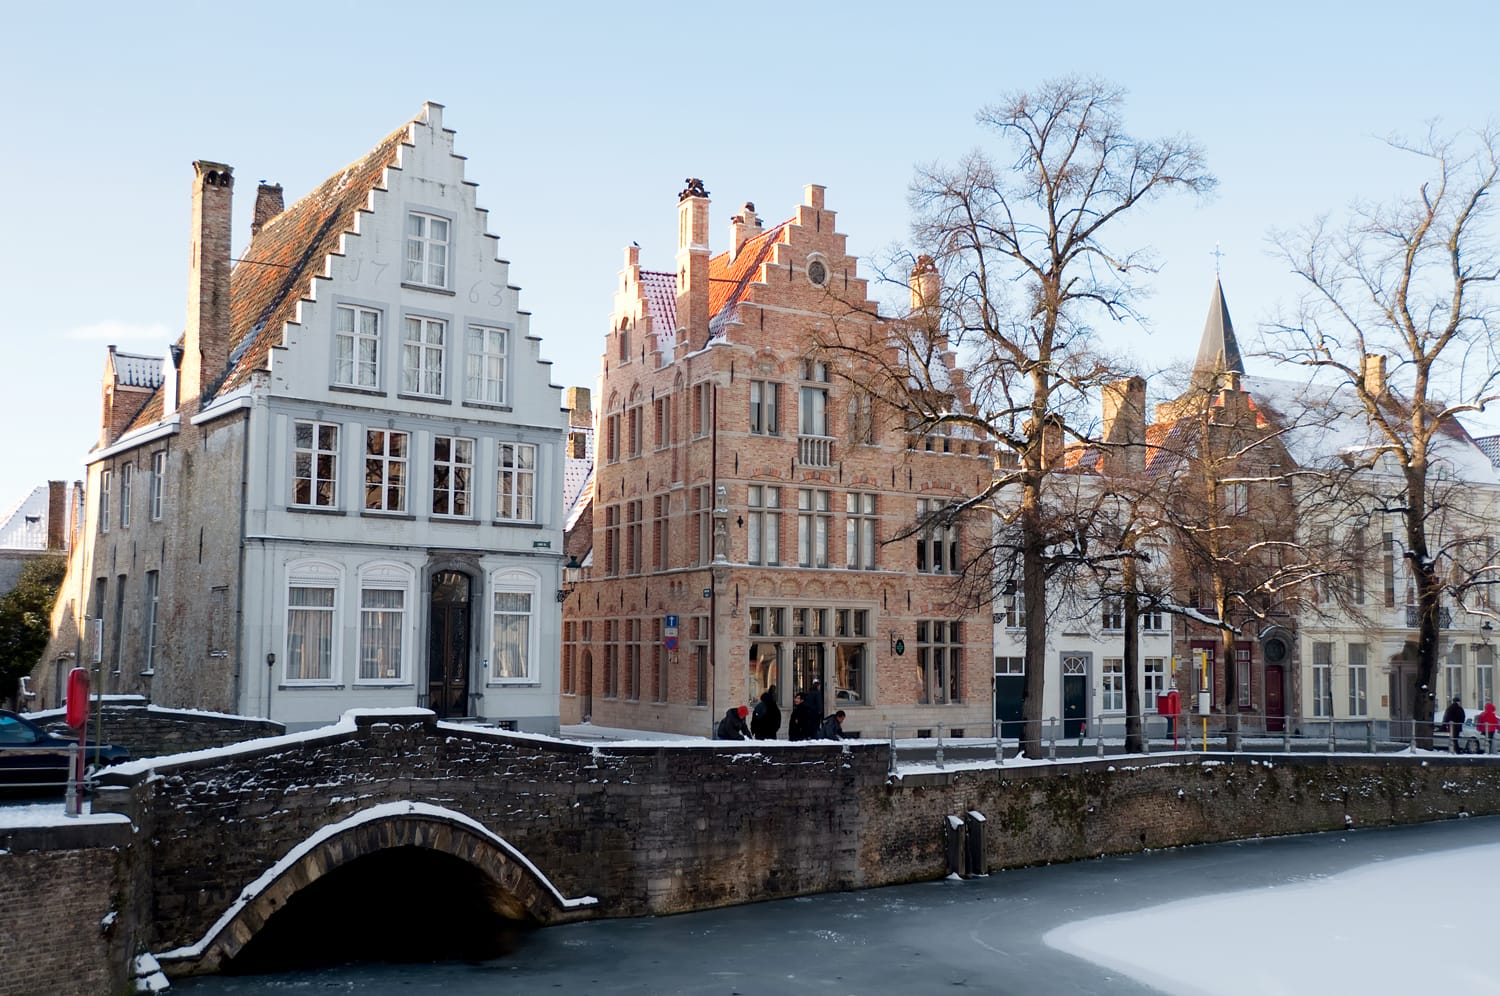 Bruges in Belgium during winter